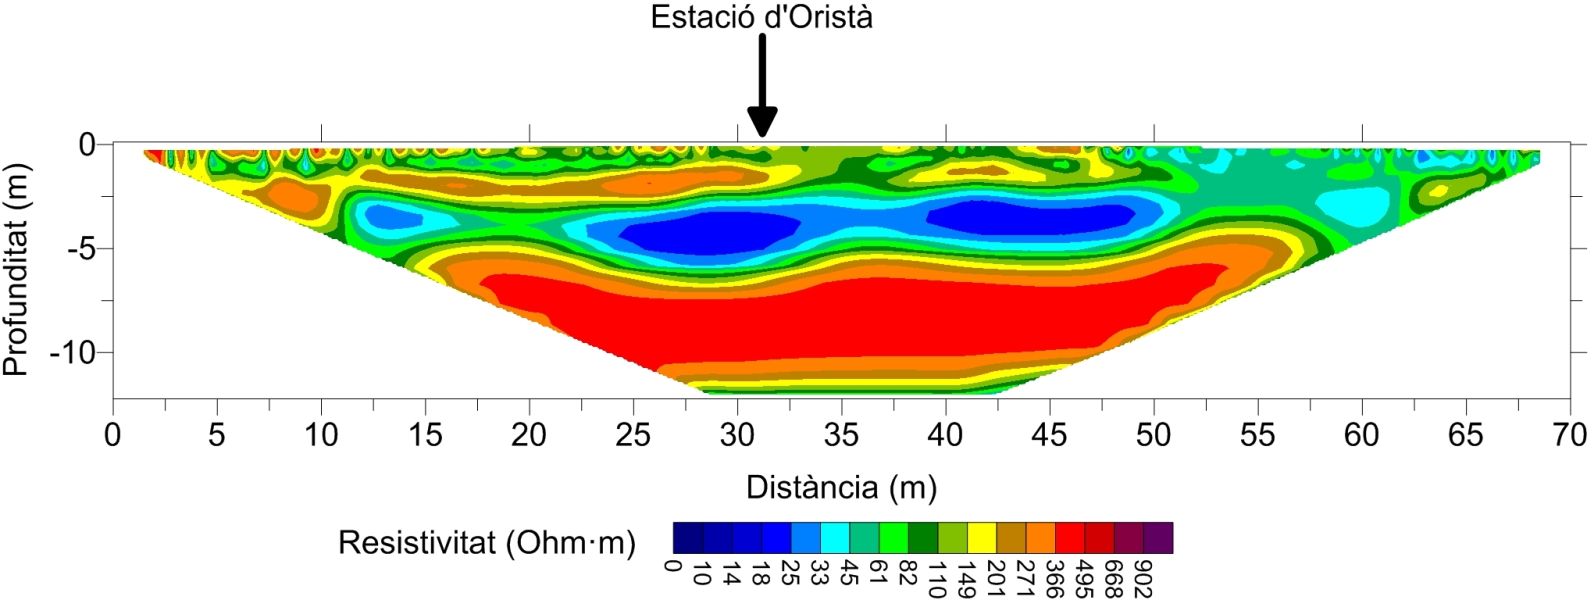 Model superficial de resistivitat elèctrica amb la ubicació del pou sísmic d'Oristà.